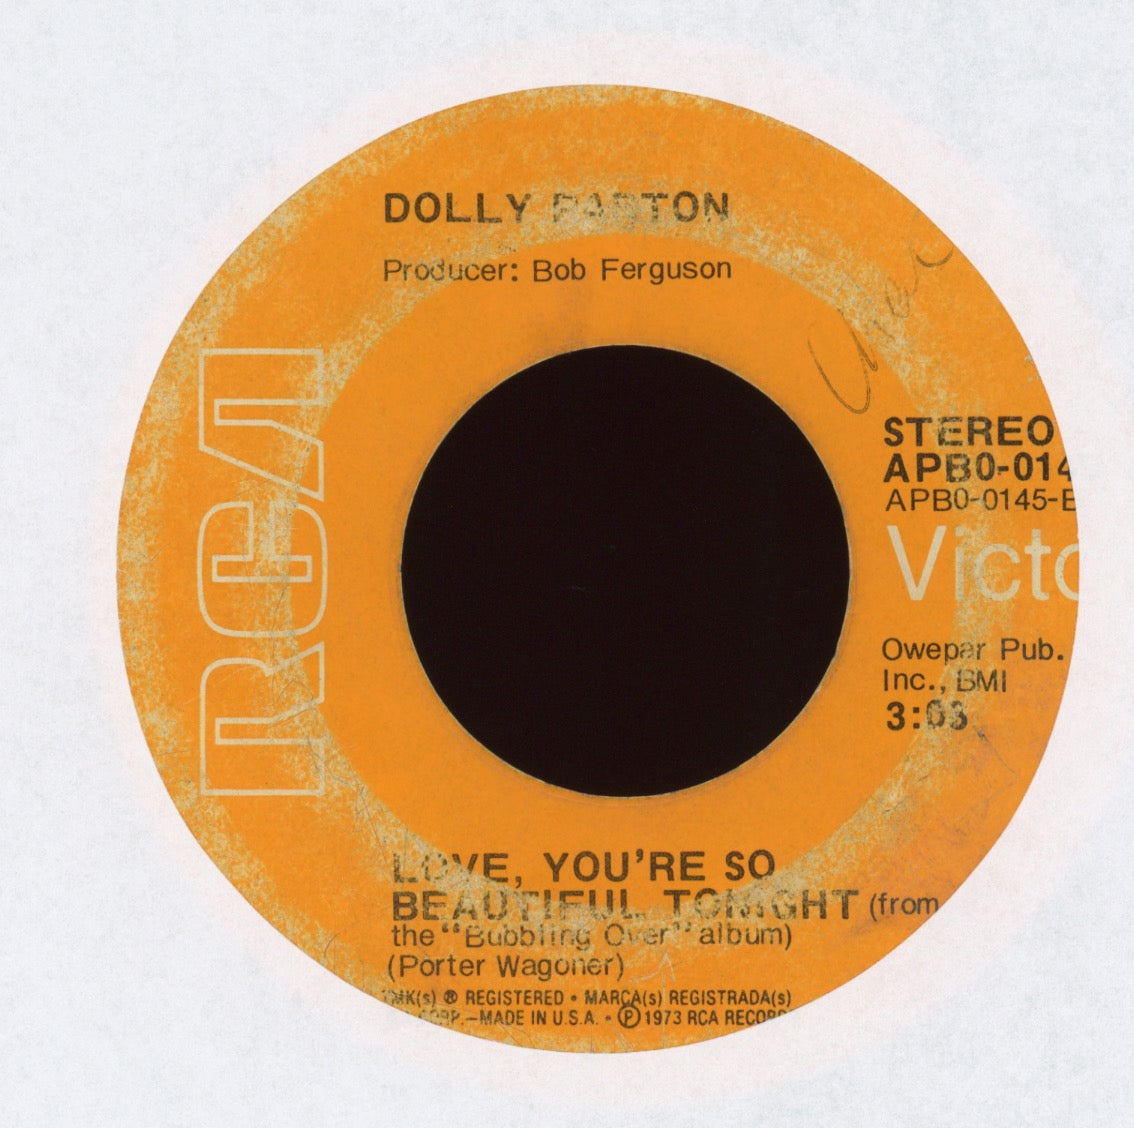 Dolly Parton - Jolene on RCA